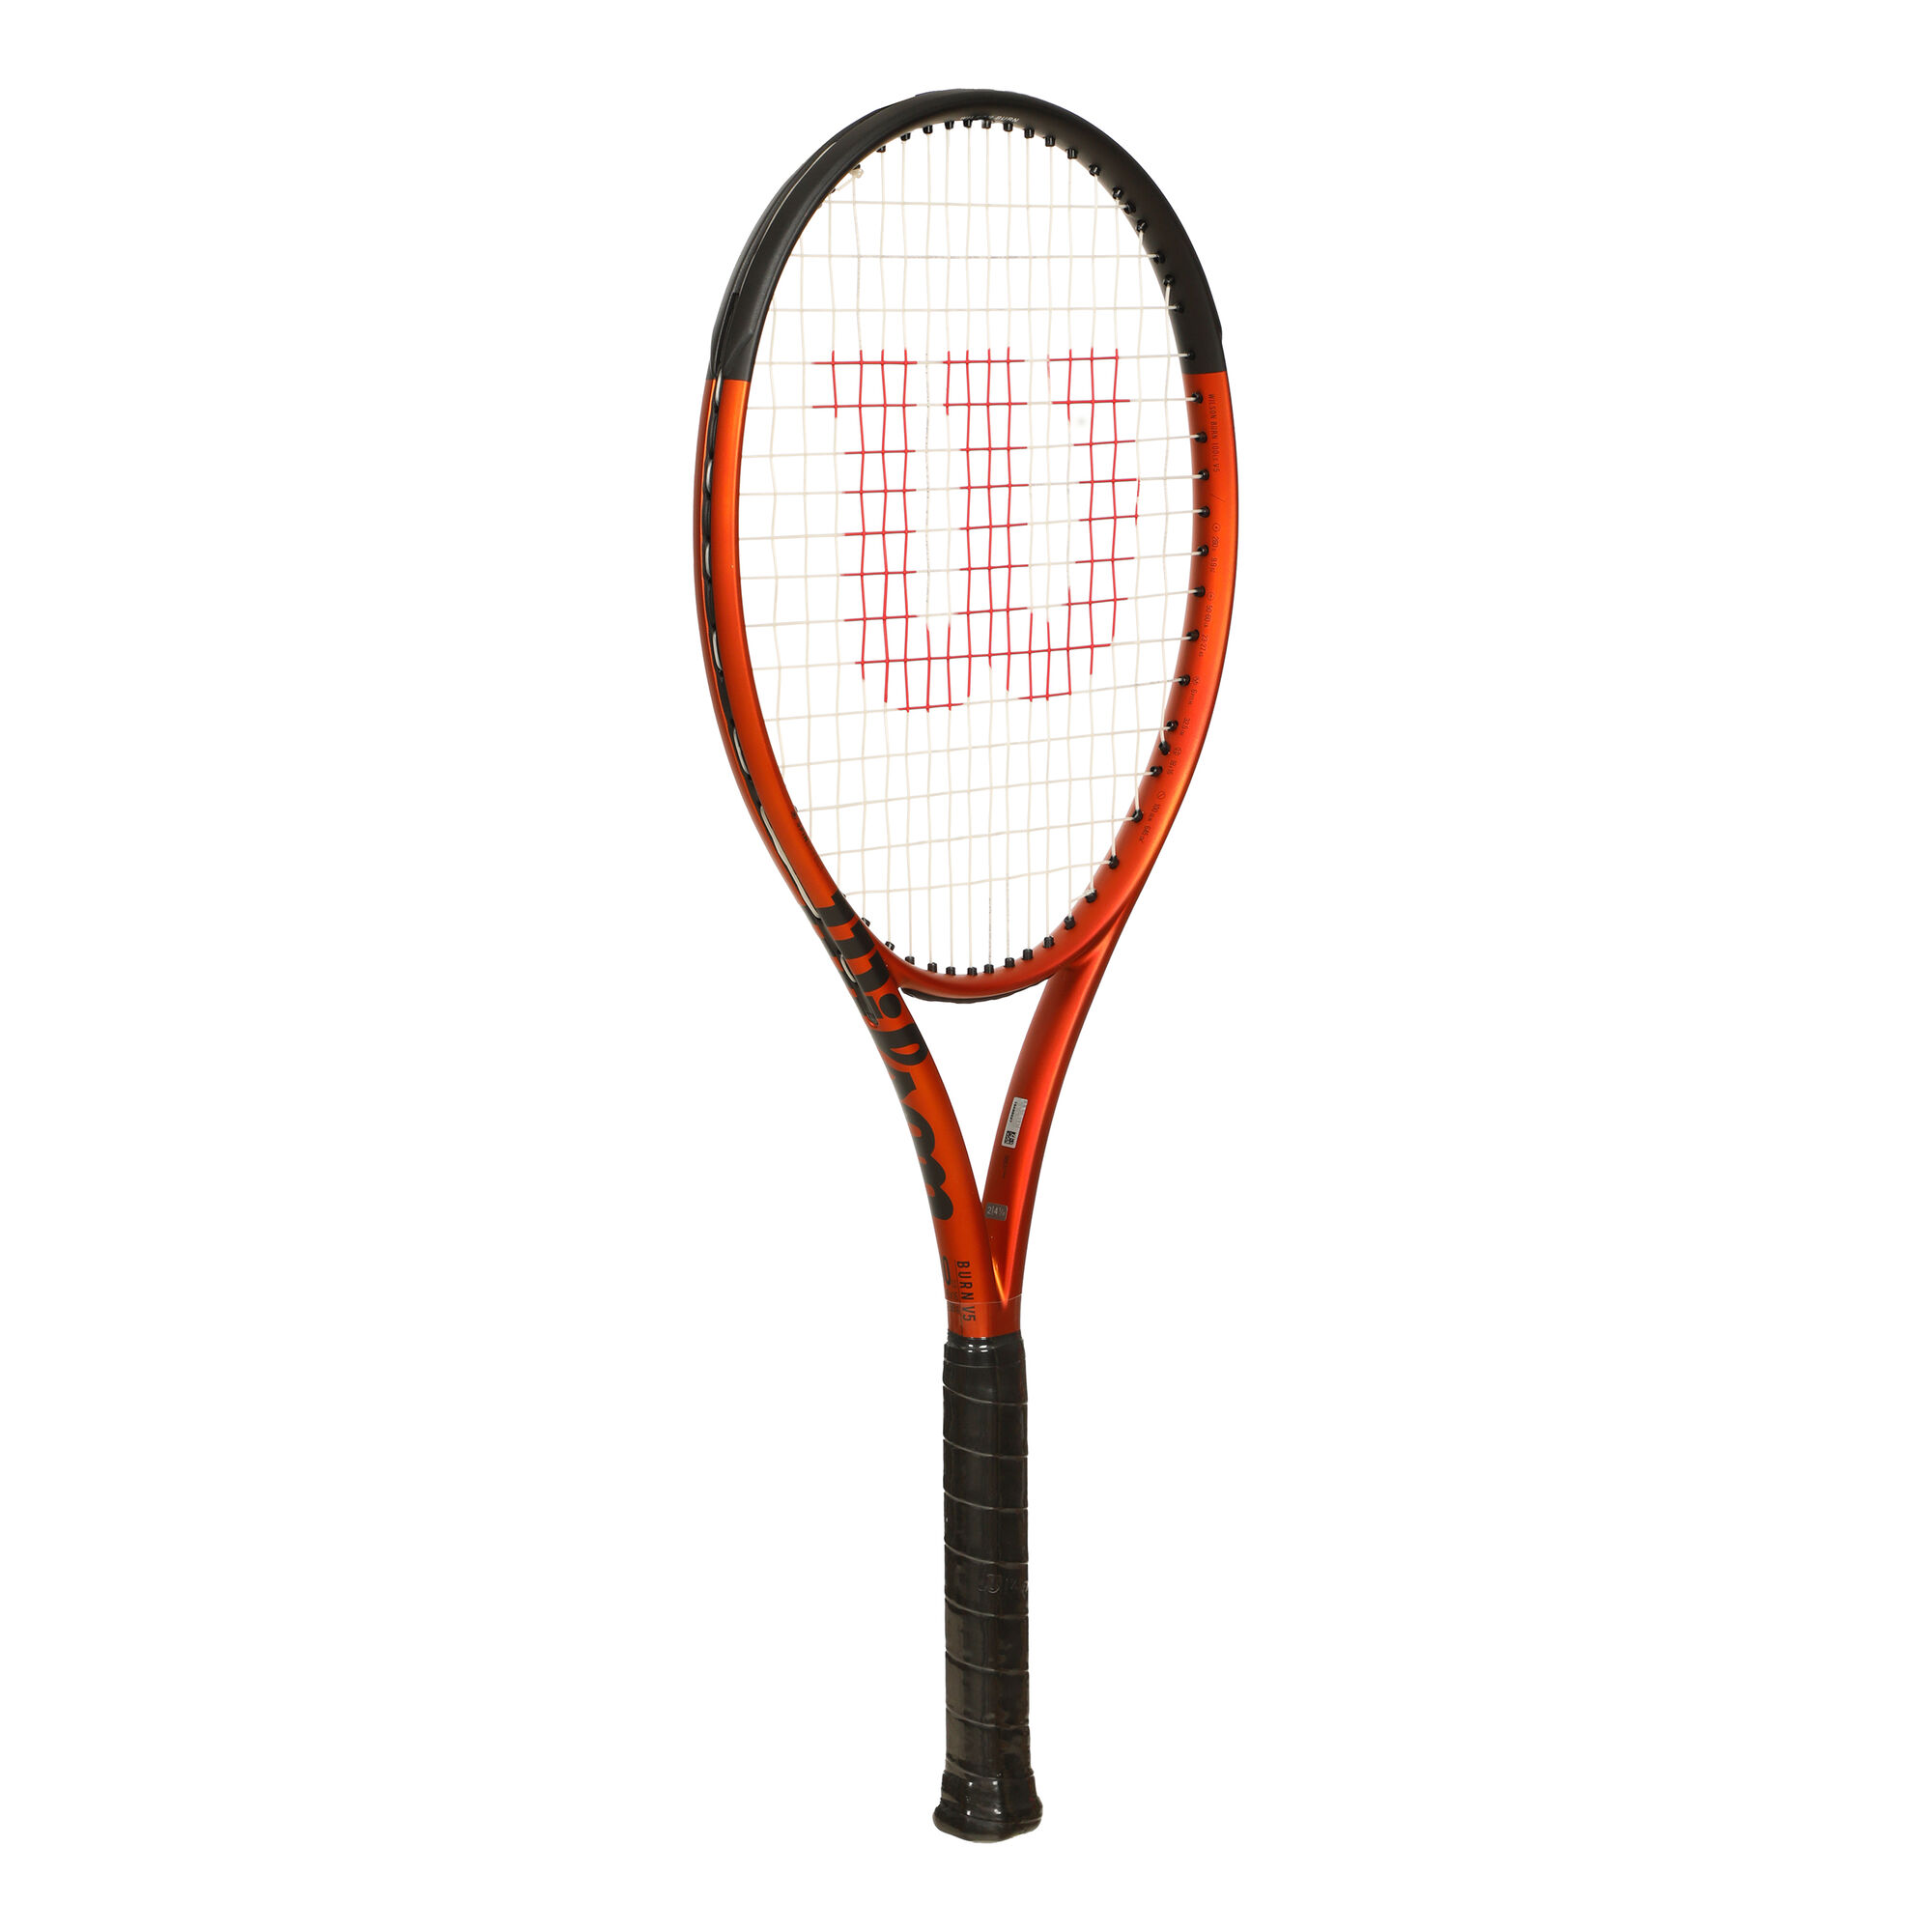 Raqueta de tenis Burn 100 V5.0